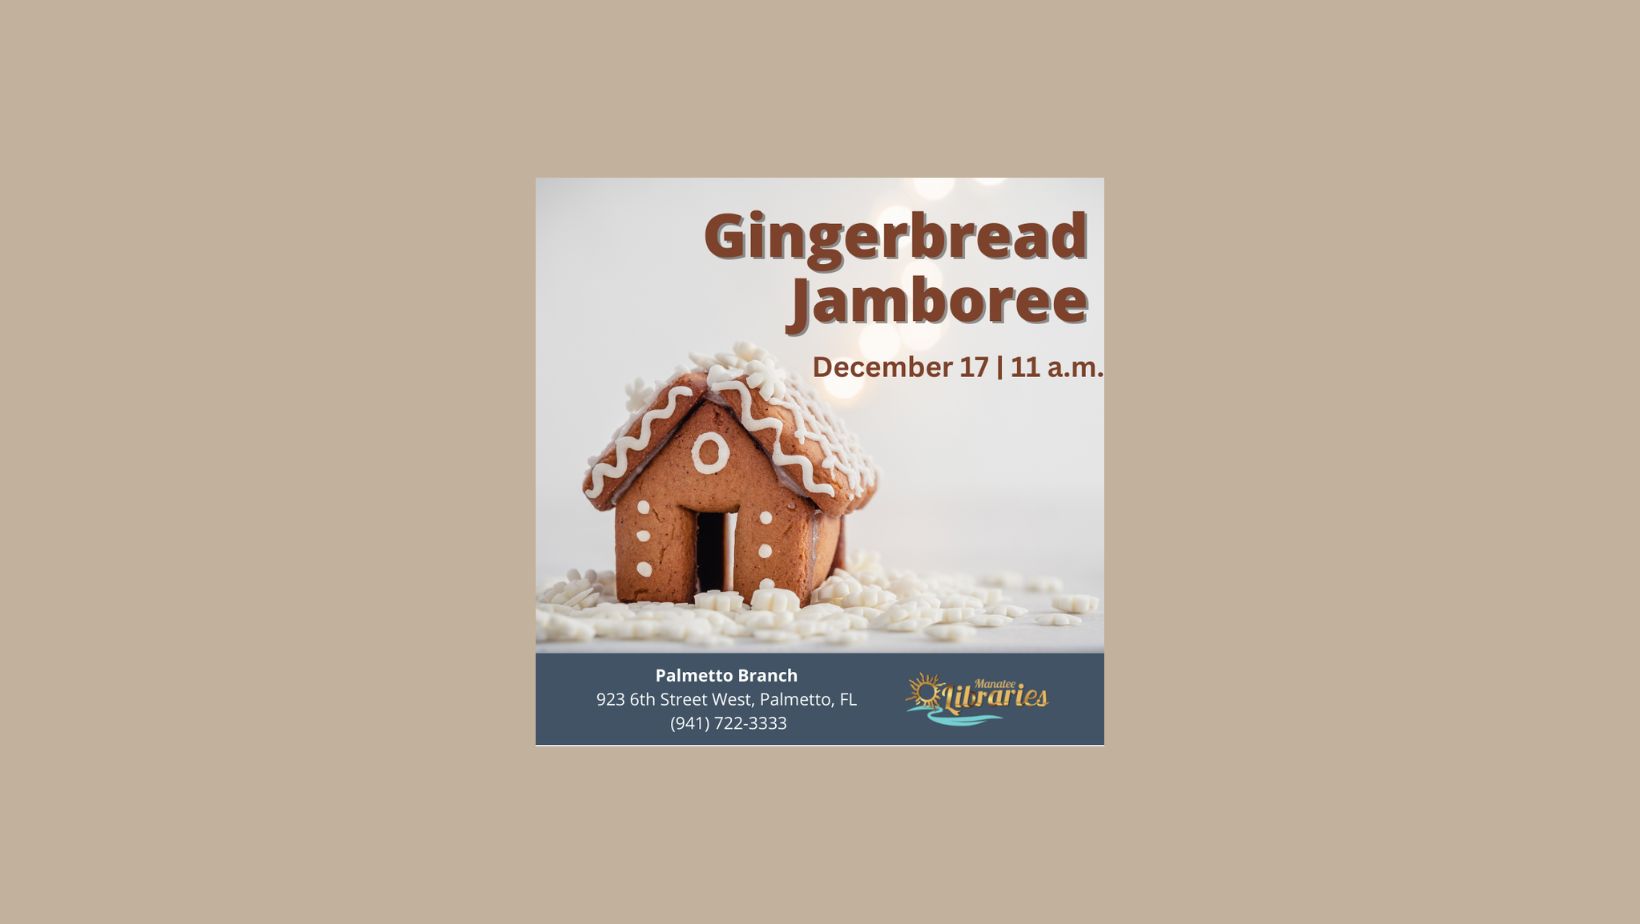 Gingerbread Jamboree